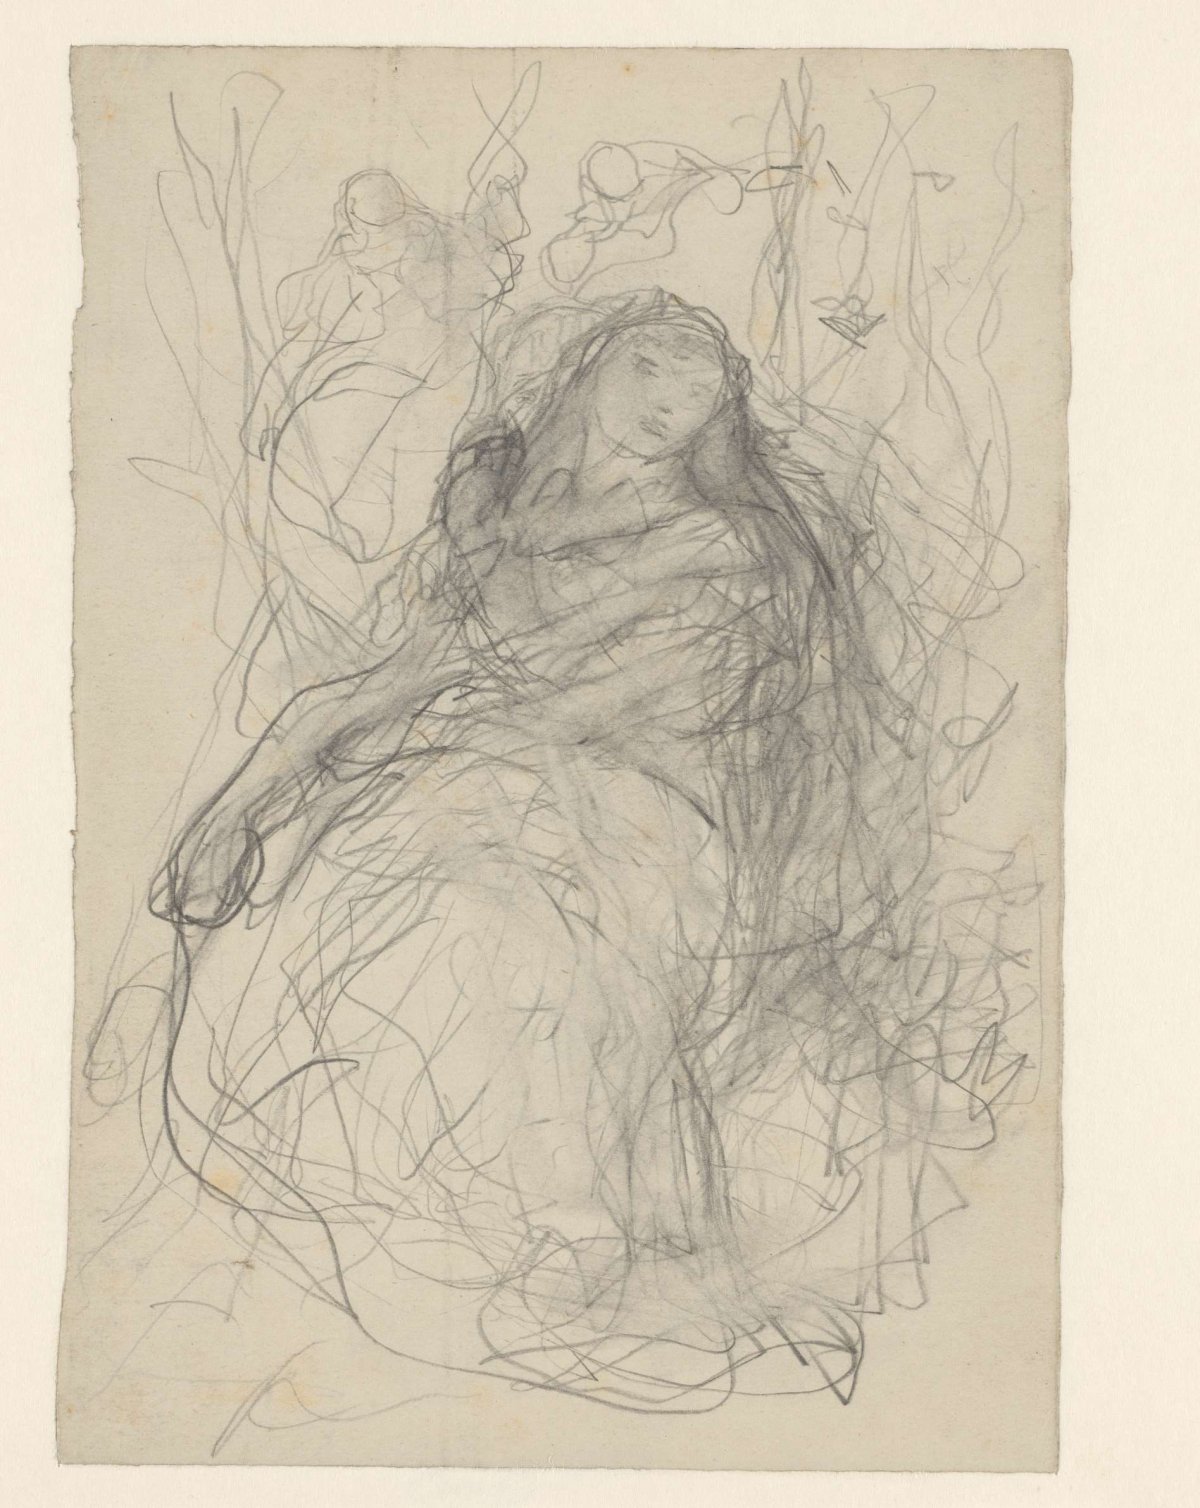 Sketch of a woman with butterflies, Matthijs Maris, 1849 - 1917